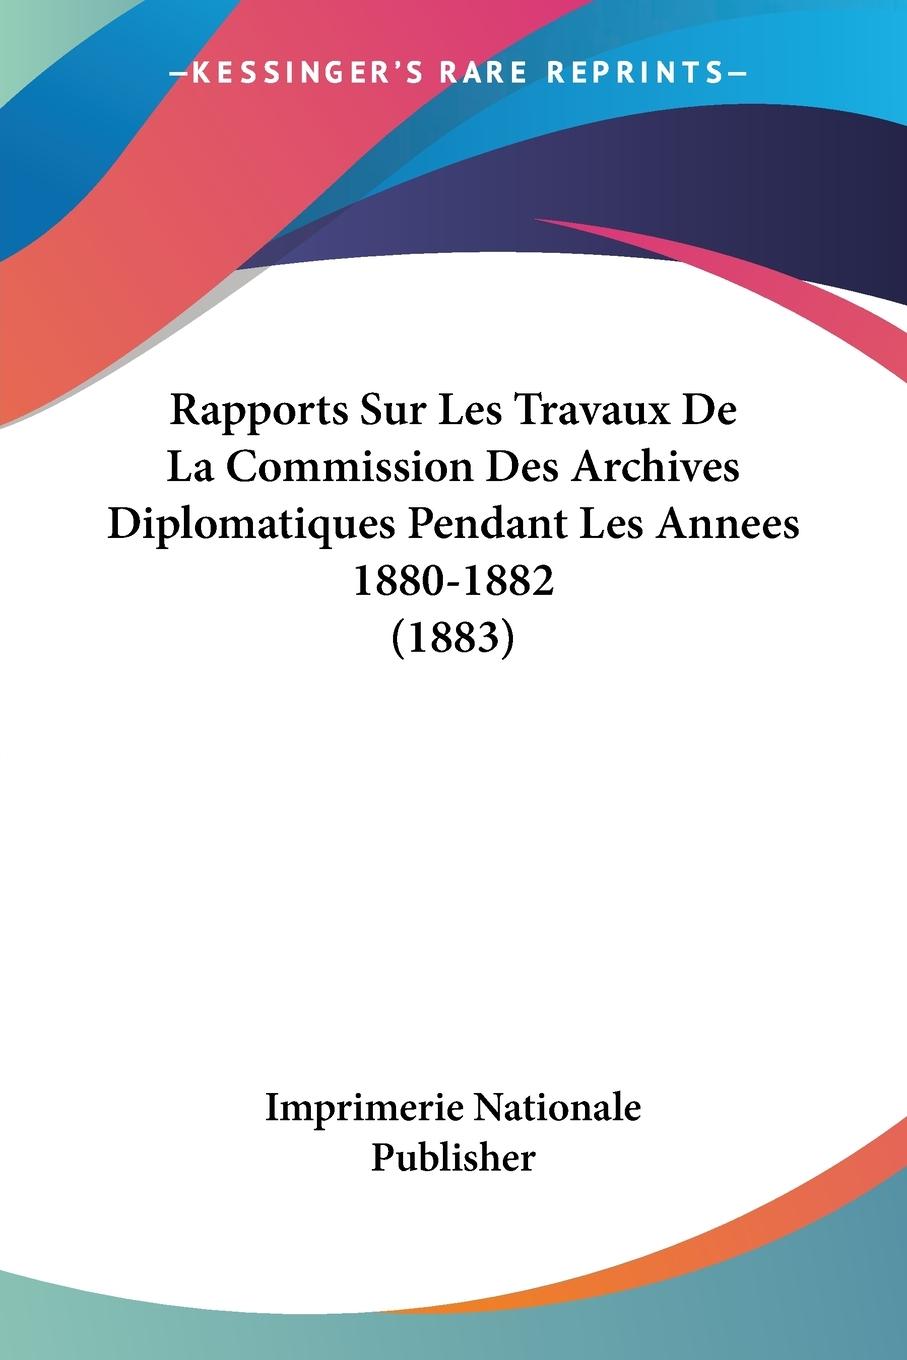 Rapports Sur Les Travaux De La Commission Des Archives Diplomatiques Pendant Les Annees 1880-1882 (1883) - Imprimerie Nationale Publisher